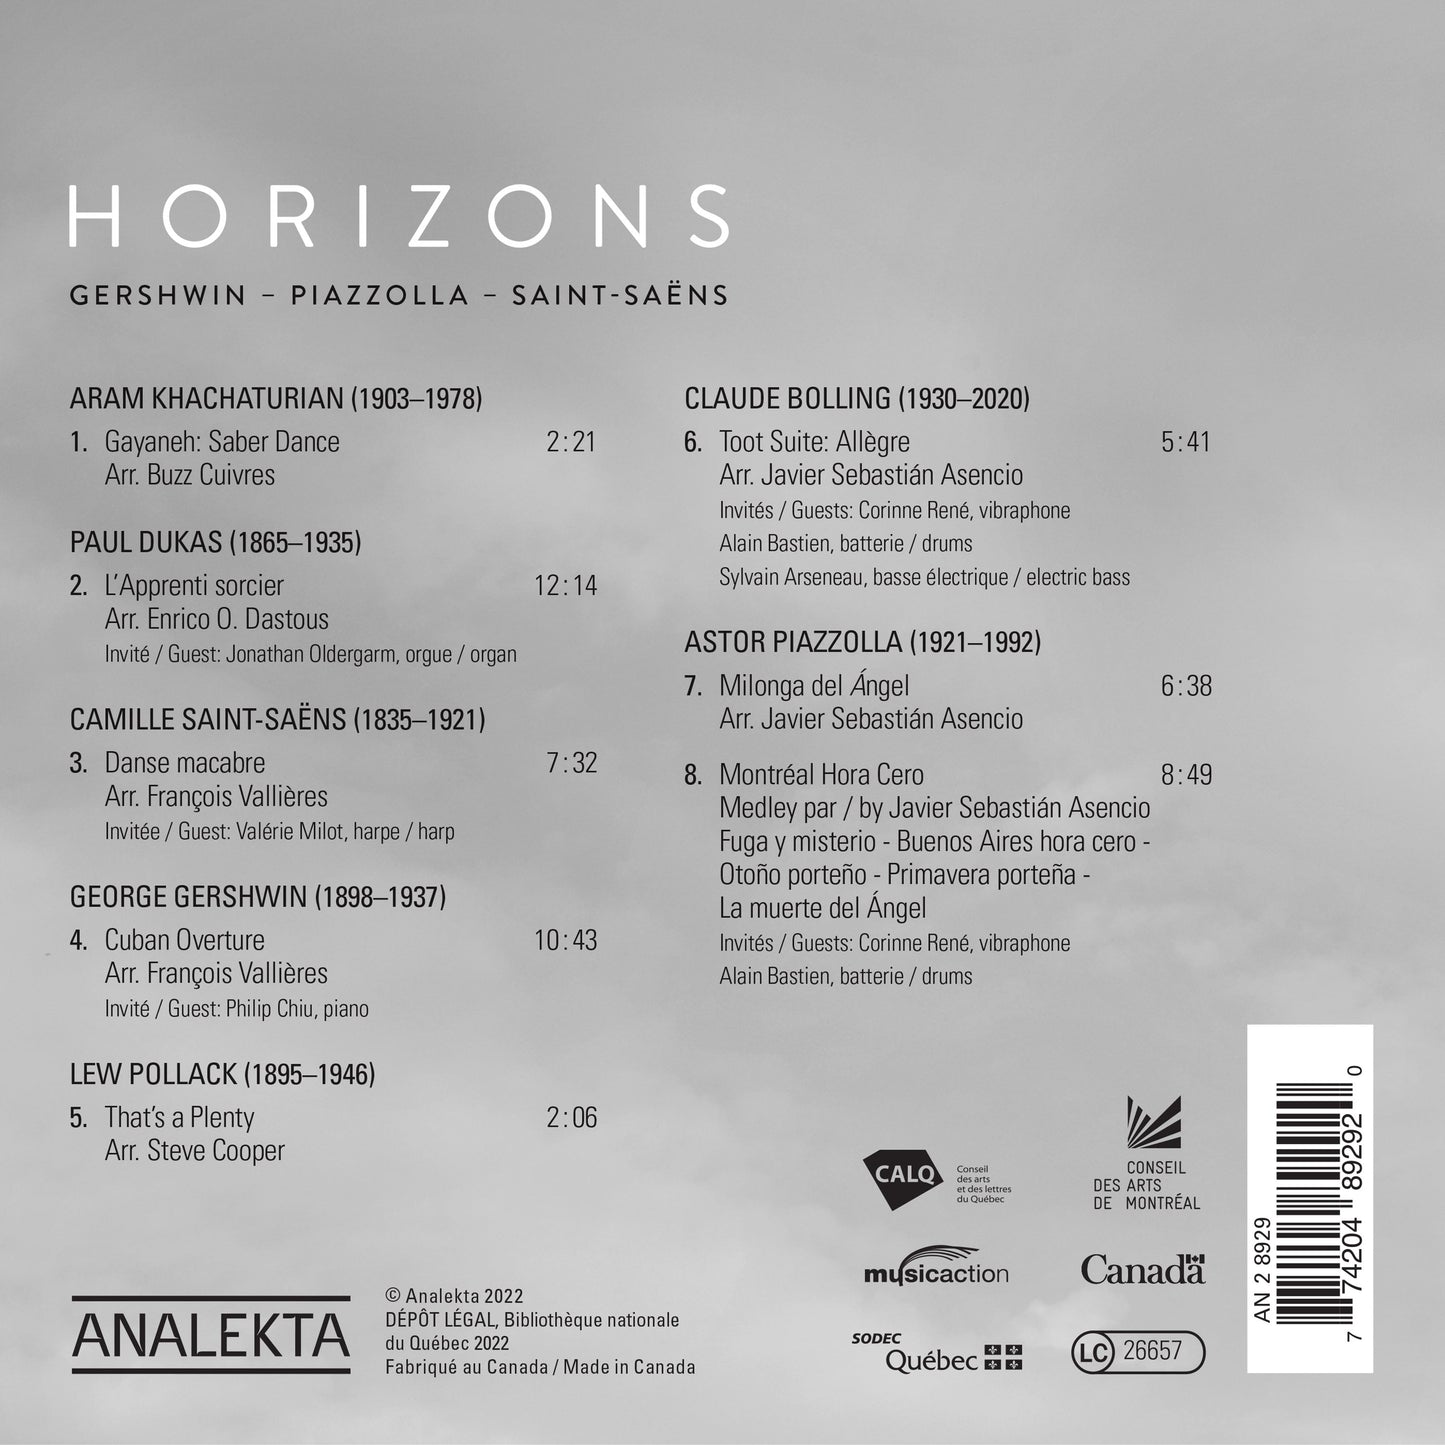 Gershwin, Piazzolla & Saint-Saens: Horizons